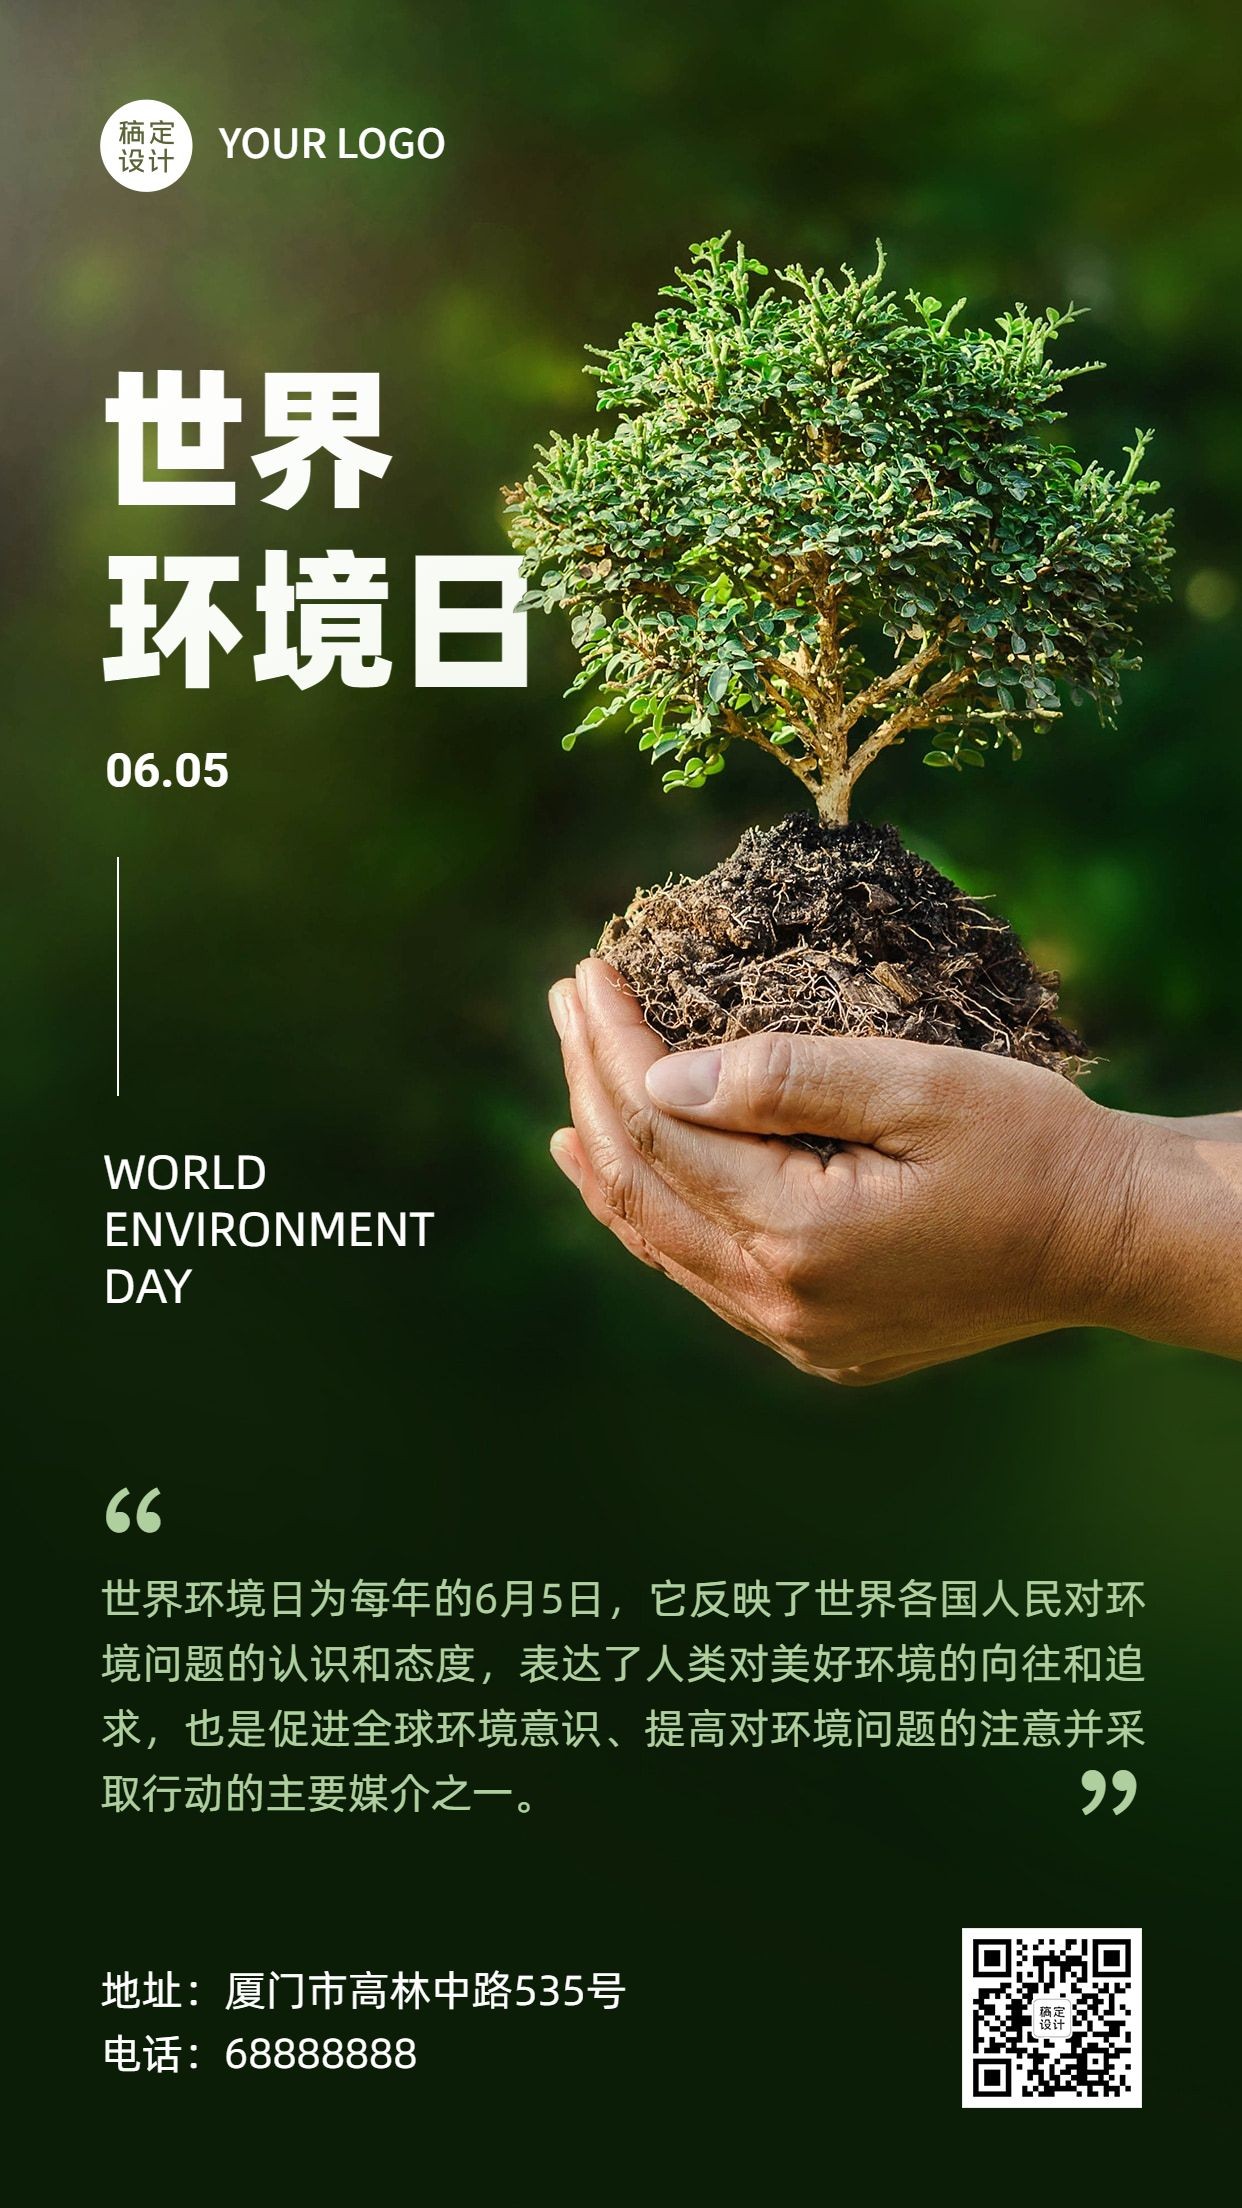 世界环境日保护生态环境手机海报预览效果